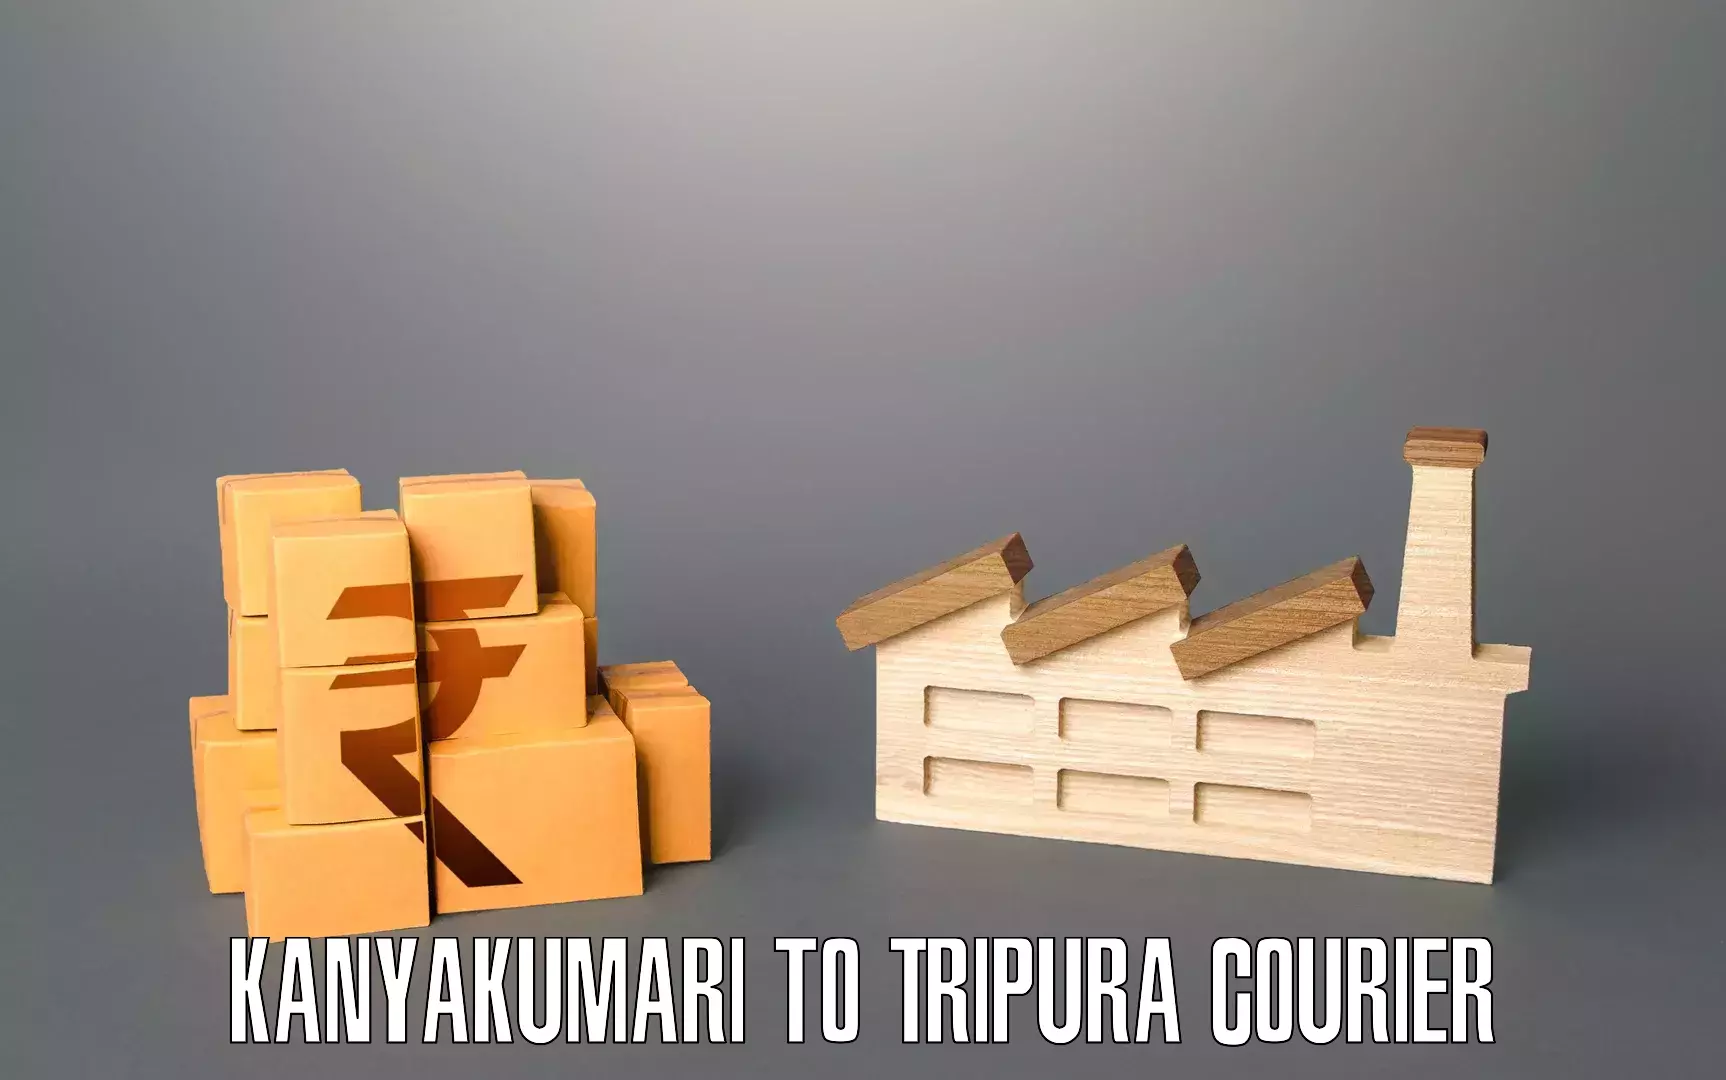 Furniture transport company Kanyakumari to Manu Bazar